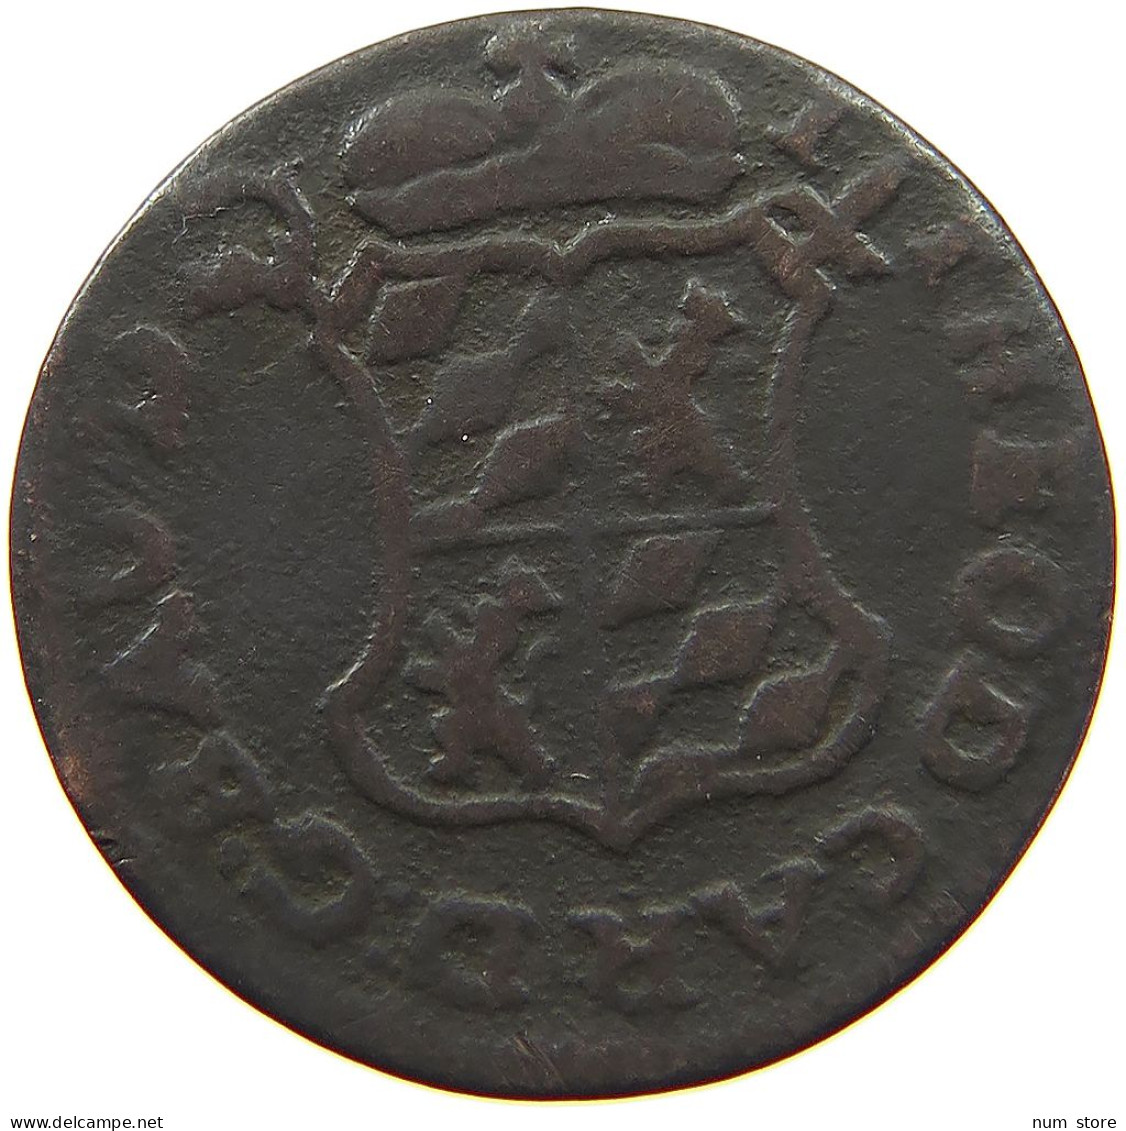 BELGIUM LIEGE LIARD 1751  #a016 0189 - 975-1795 Prince-Bishopric Of Liège